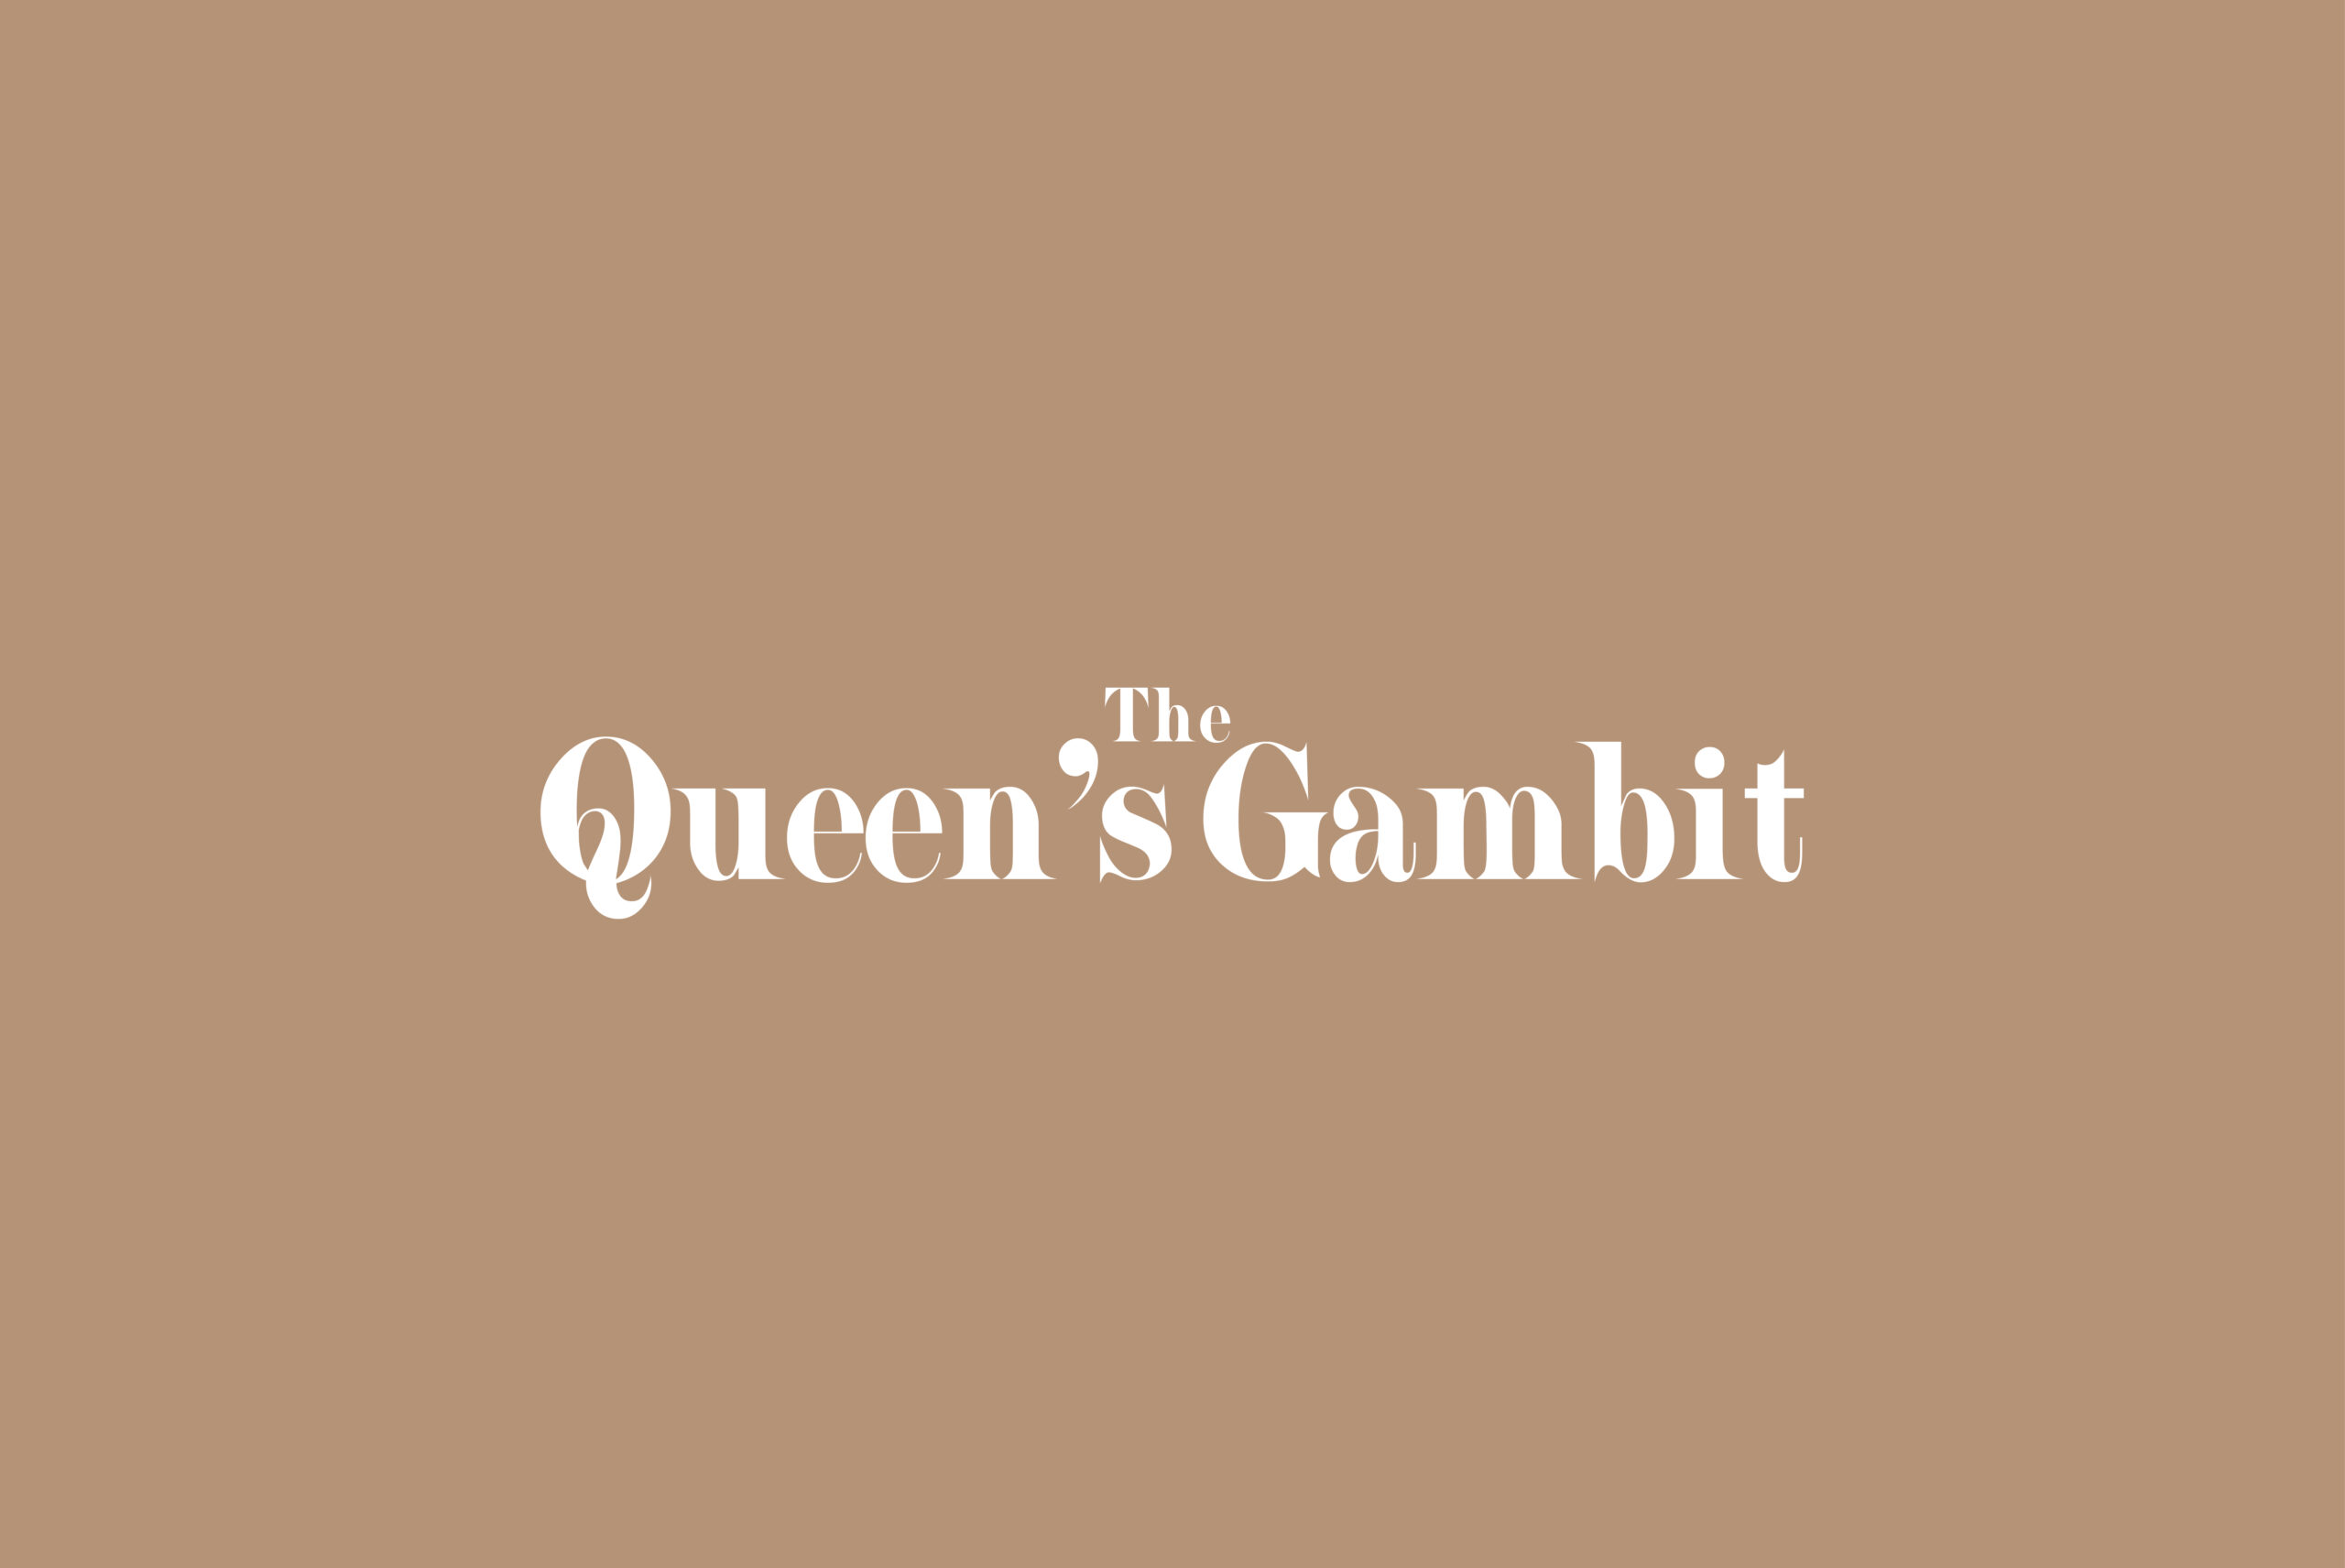 Queen's Gambit due